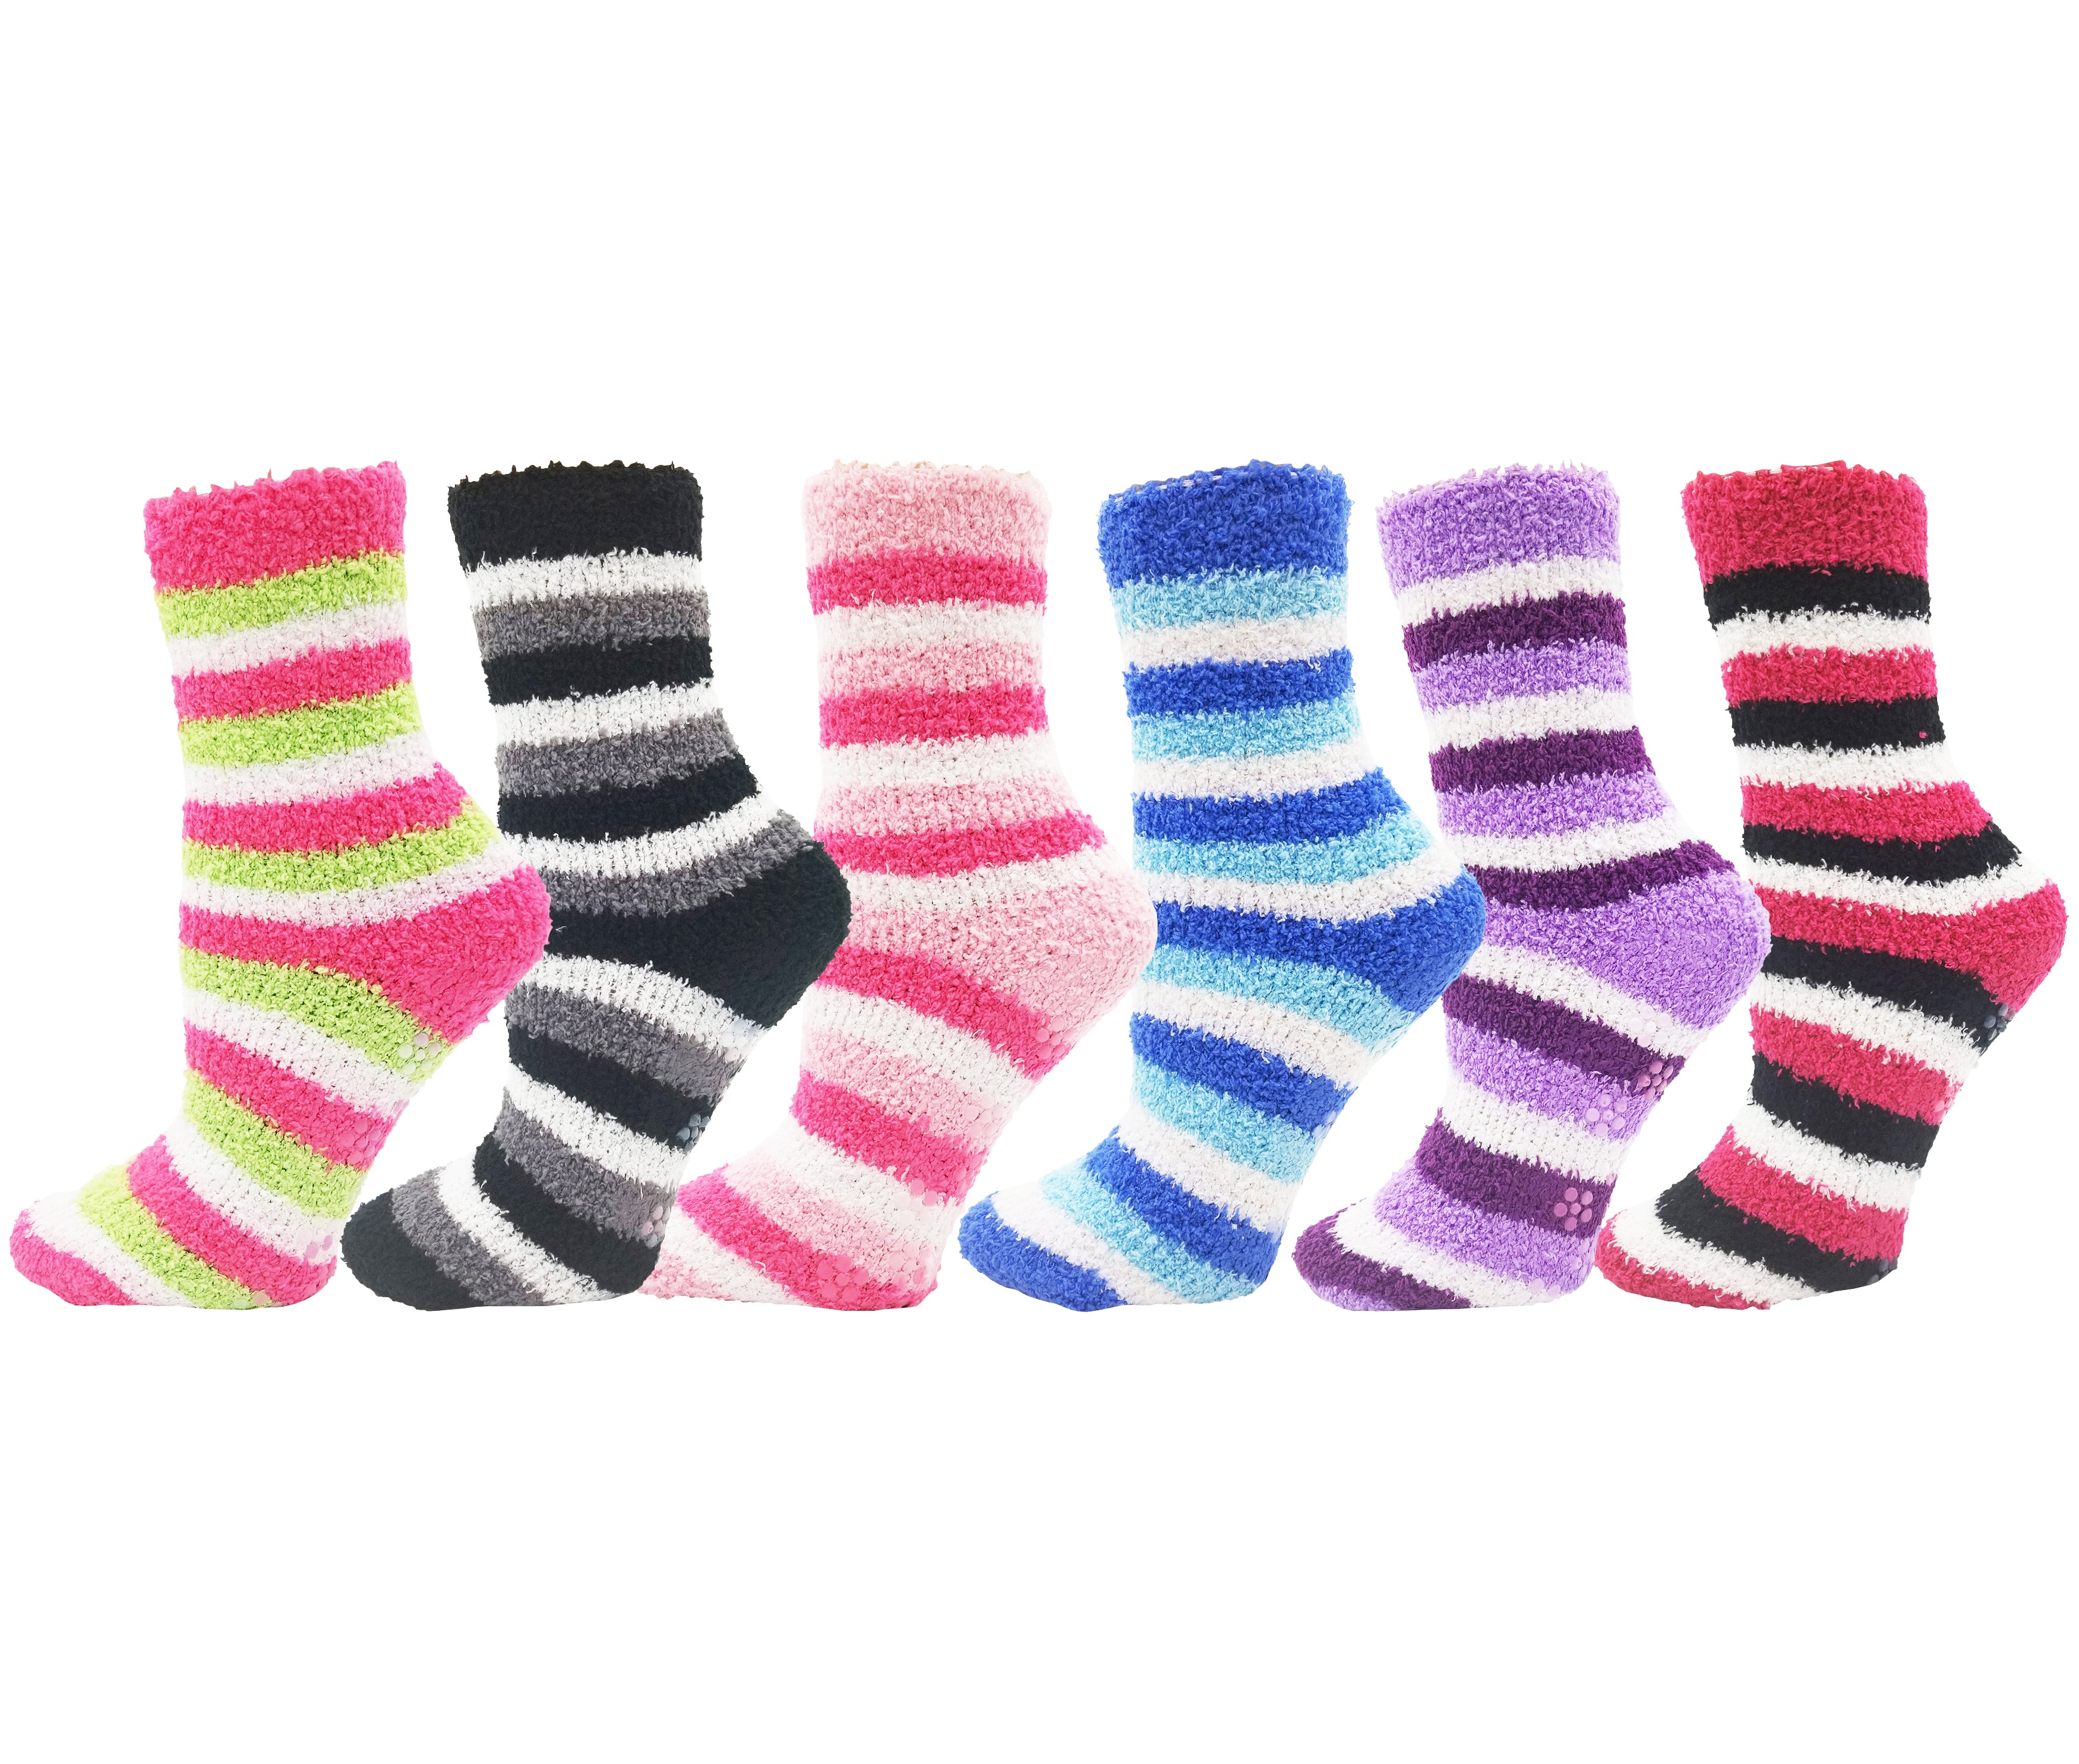 Buy Fuzzy Socks in Bulk